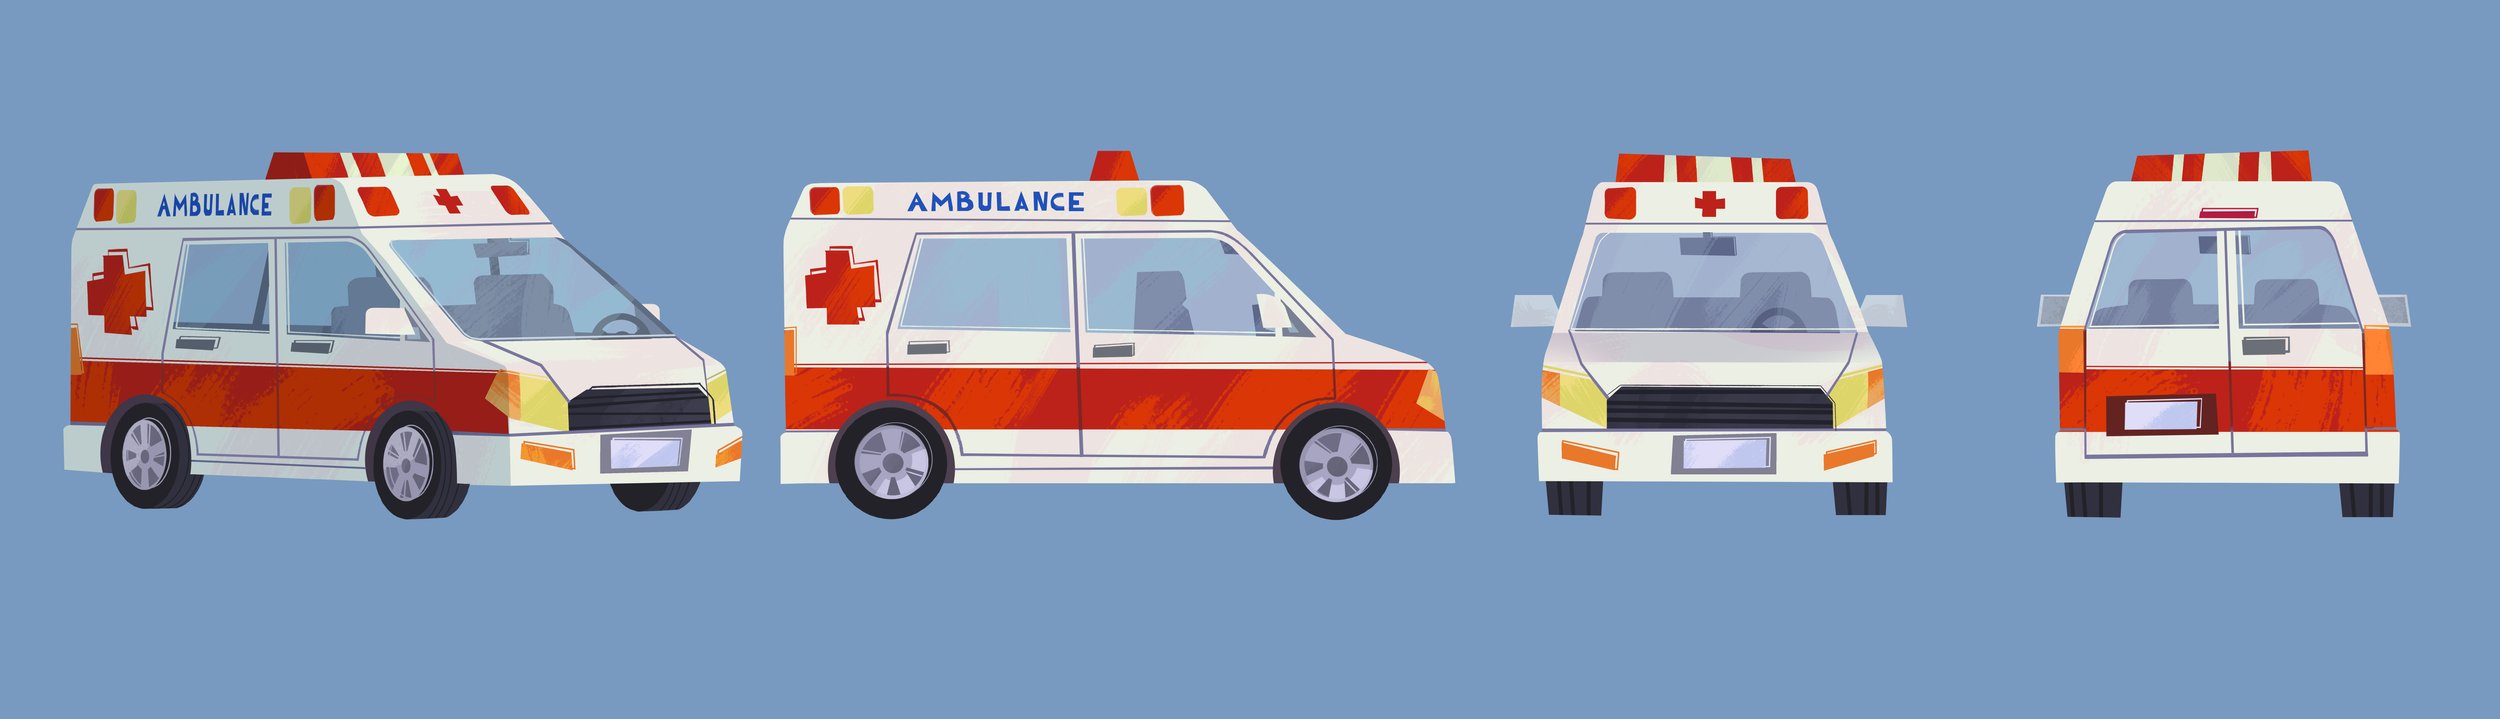 106_Ambulance_v01_TD.jpg